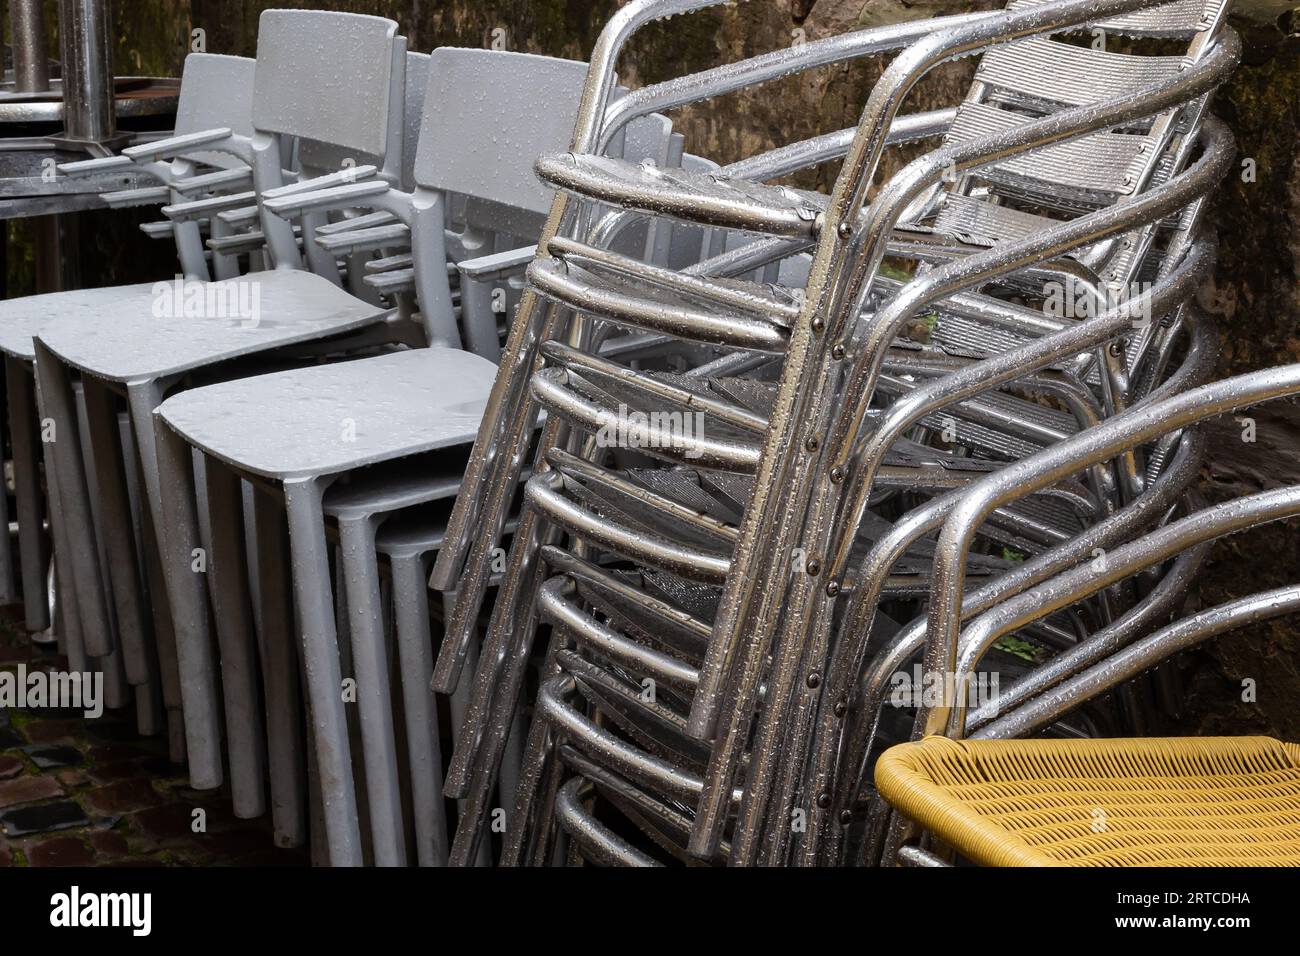 sedie ripiegate. tavoli in acciaio inossidabile lucidati di fronte a un bar bagnato da pioggia e rugiada. la stagione delle terrazze all'aperto termina. Foto Stock